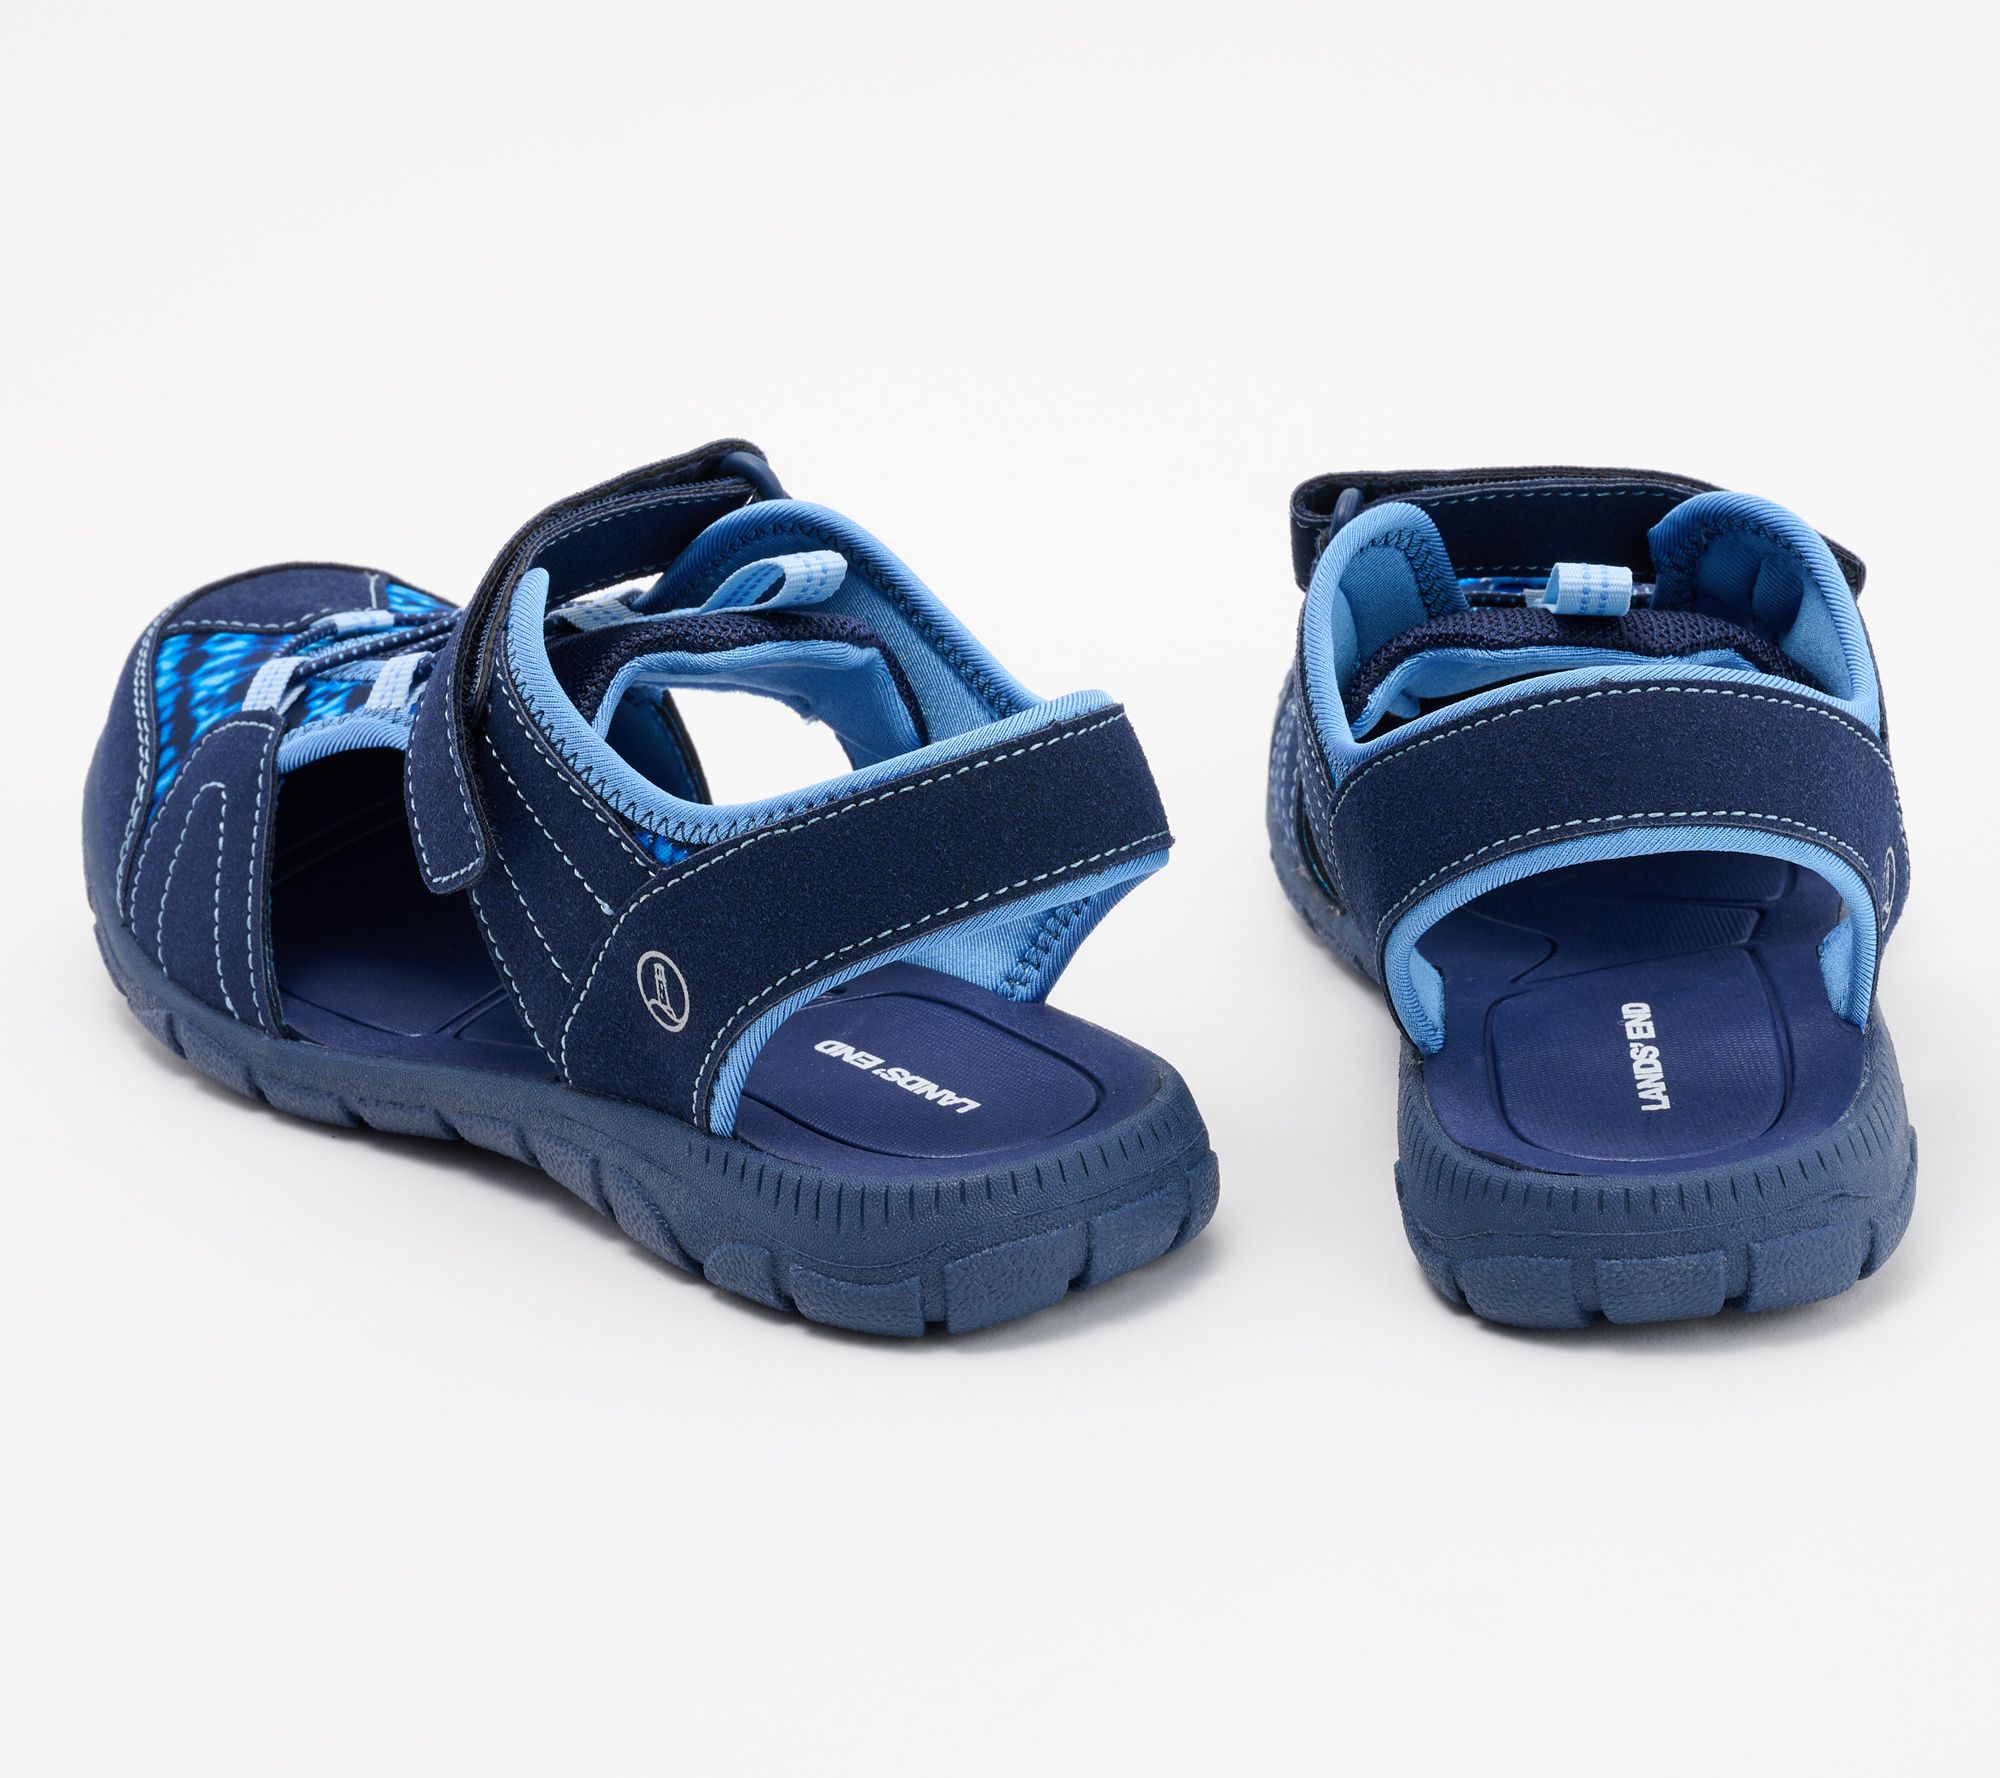 Lands' End Water Repellent Adjustable Closed Toe Sport Sandals - QVC.com